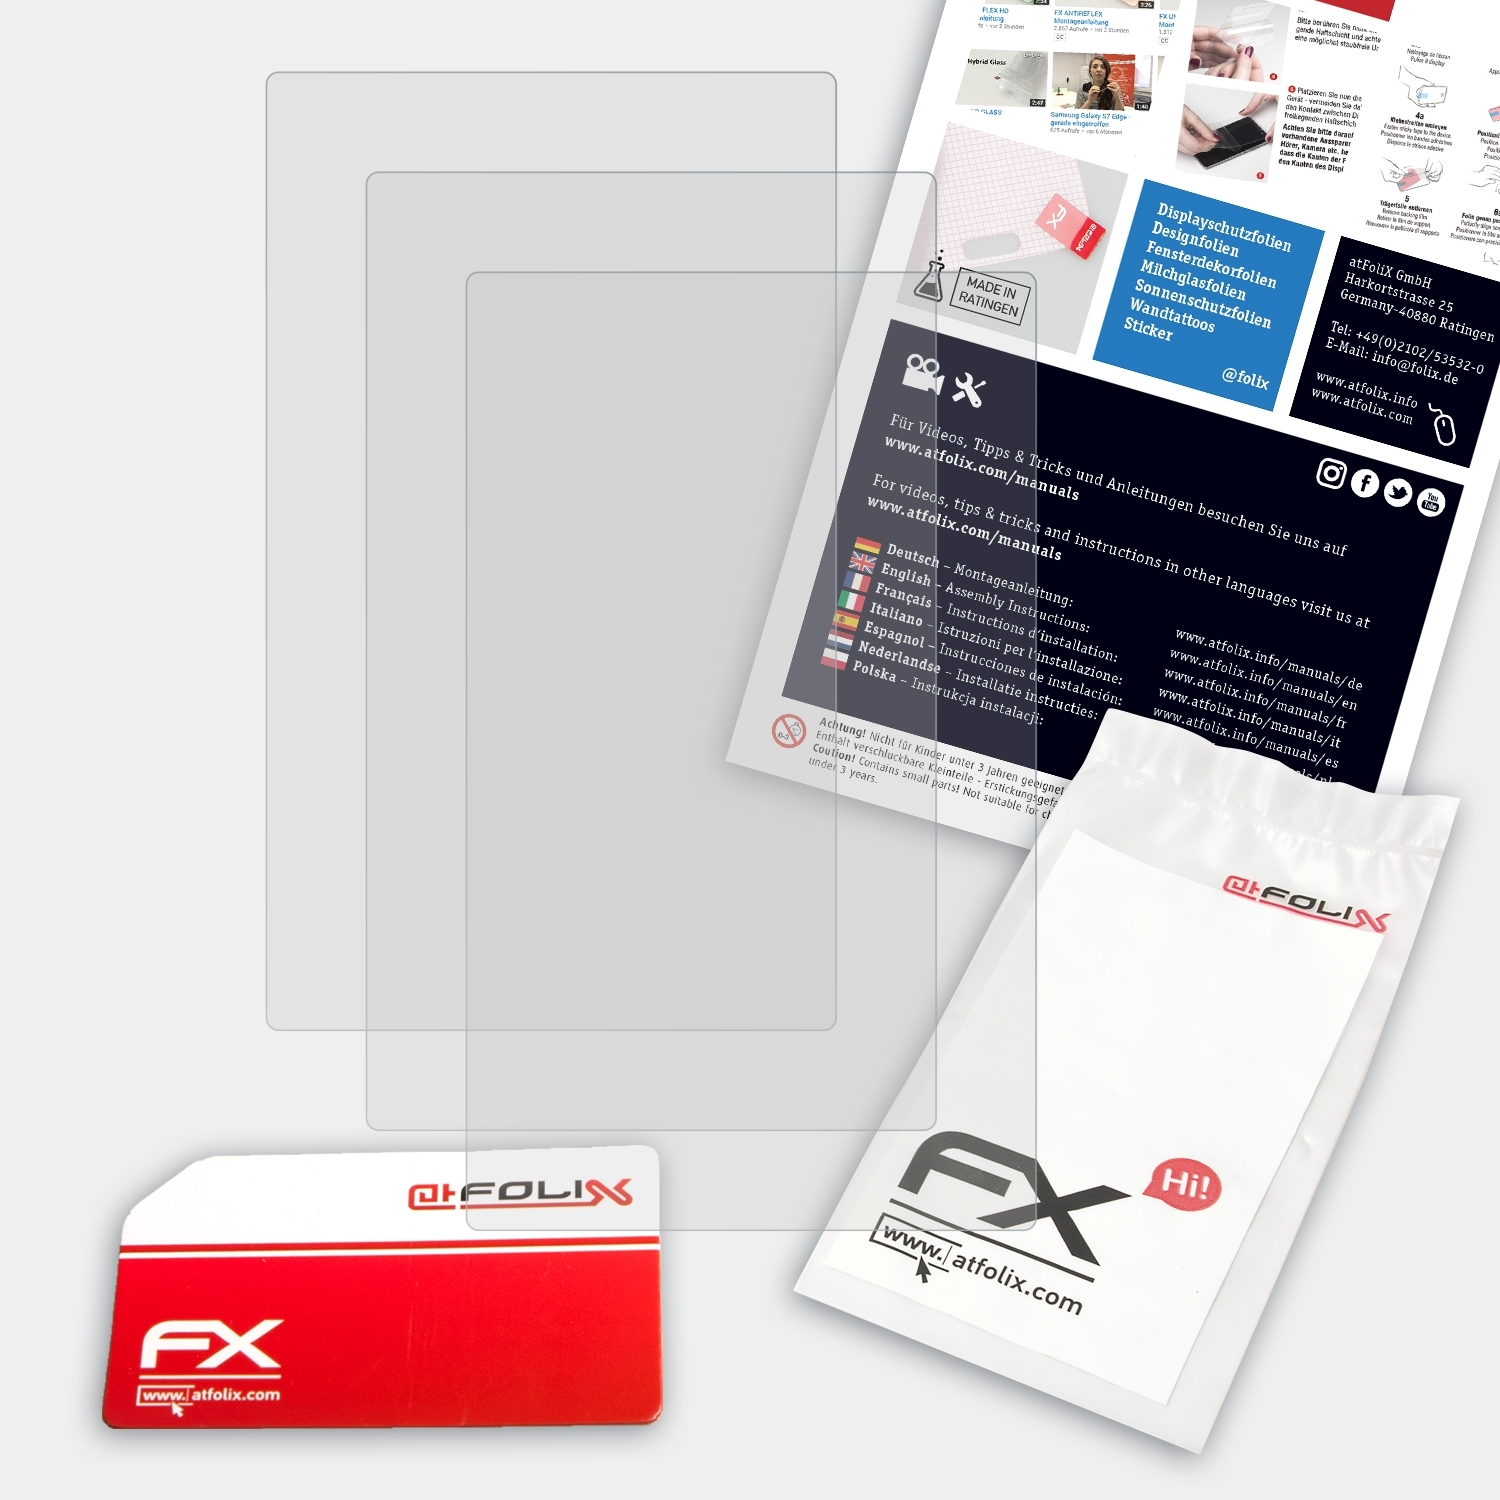 ATFOLIX 3x FX-Antireflex IRiver Astell&Kern AK Jr) Displayschutz(für